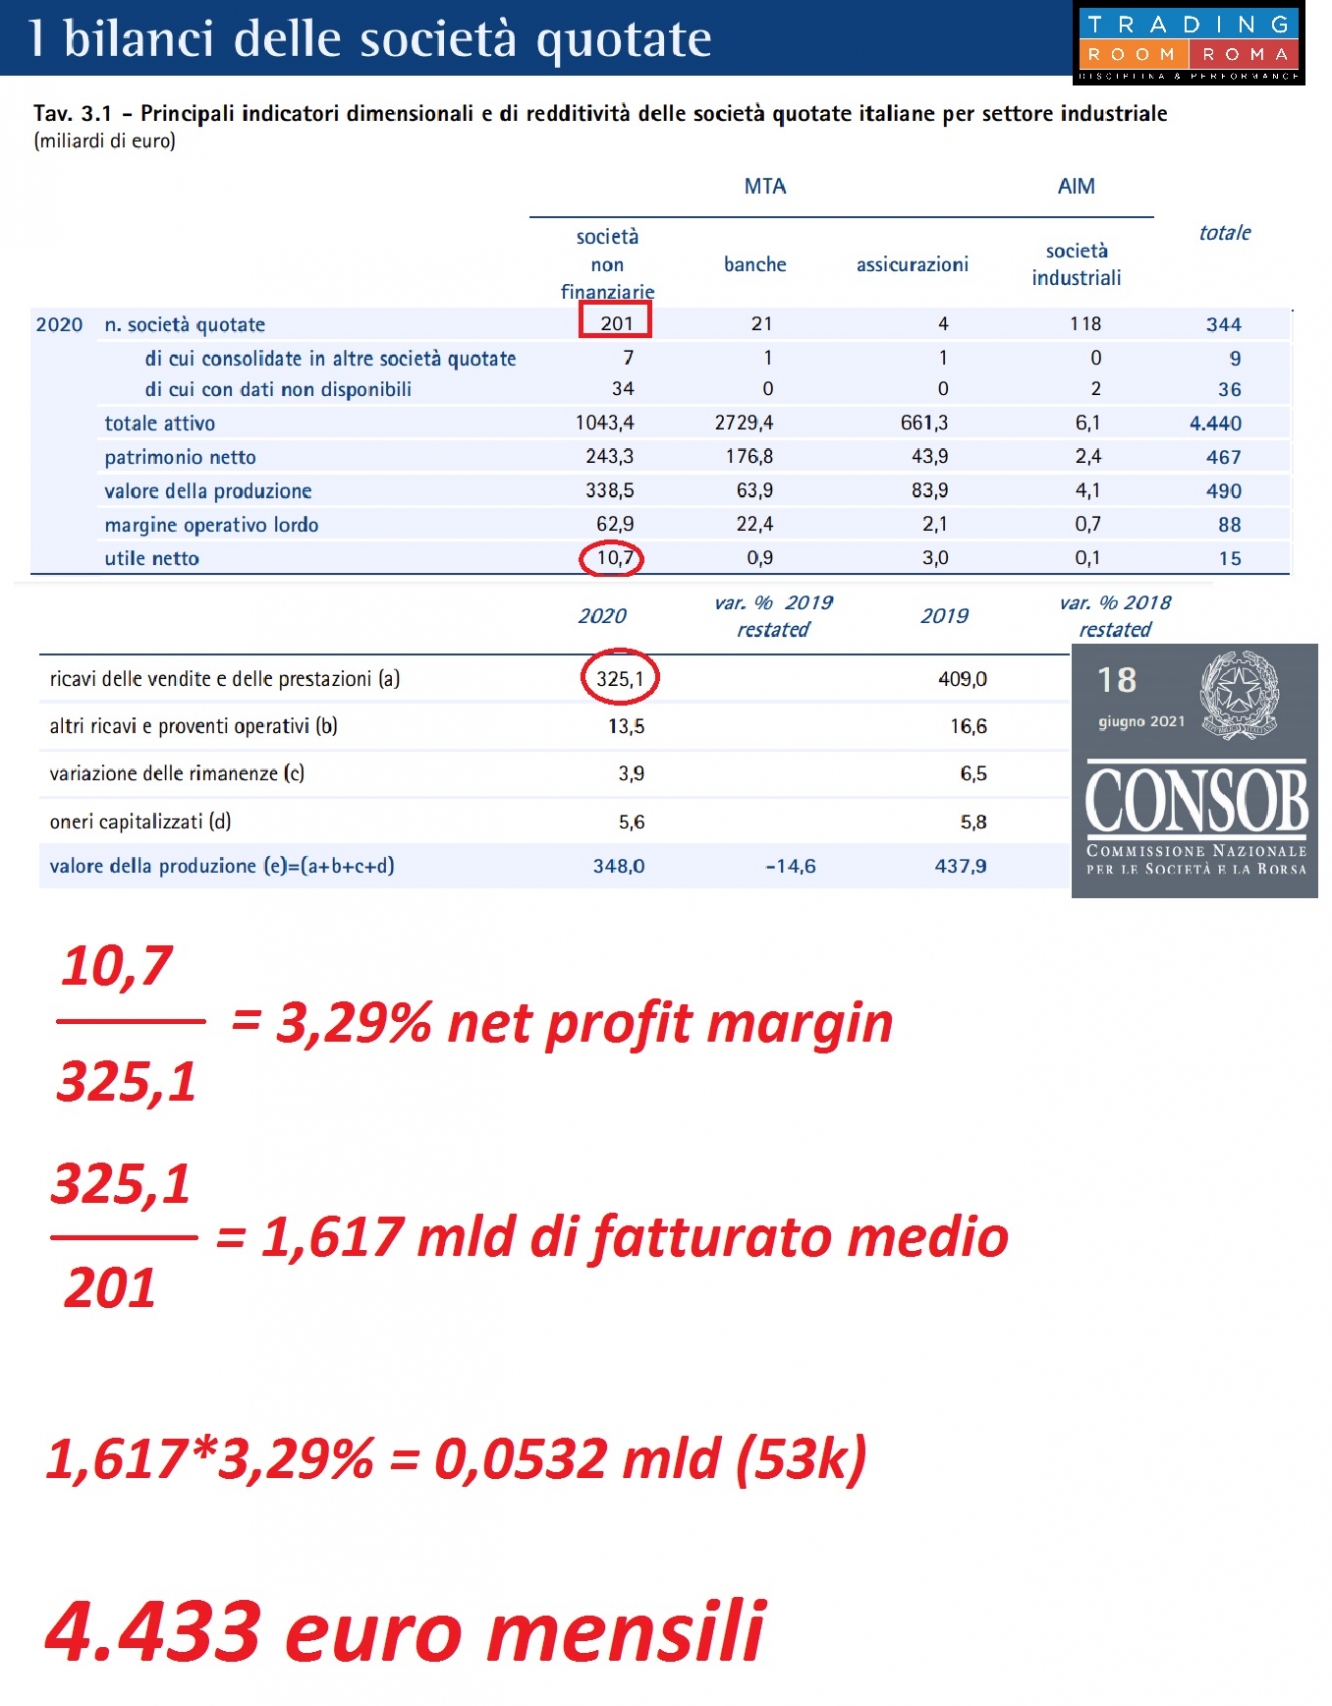 Utile netto medio delle imprese non finanziarie quotate in Italia